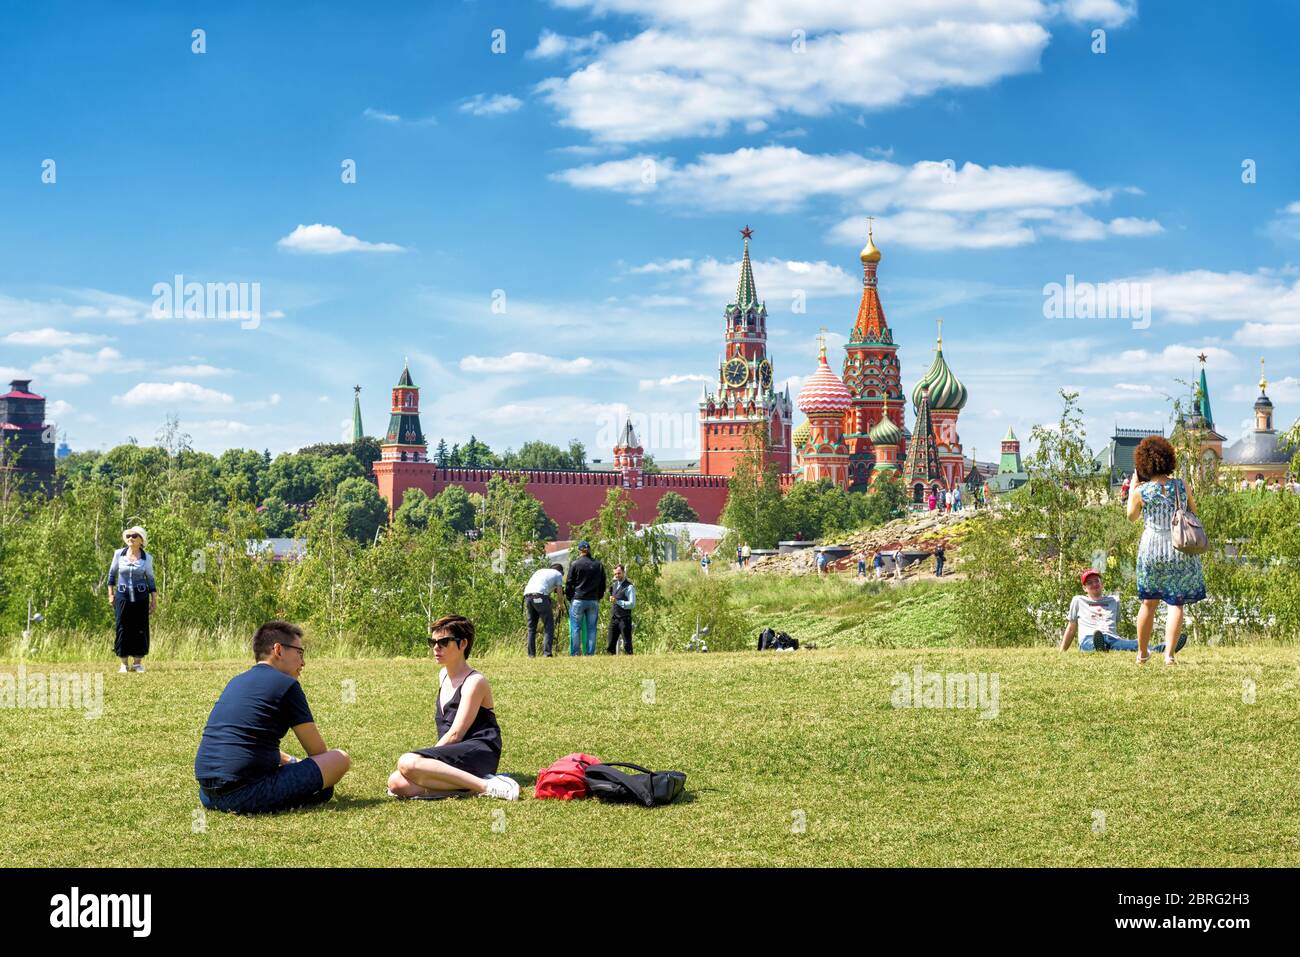 Moskau - 17. Juni 2018: Menschen entspannen sich im Zaryadye Park in der Nähe von Moskau Kreml, Russland. Zaryadye ist eine der wichtigsten touristischen Attraktionen von Moskau. Landschaftlich schön V Stockfoto